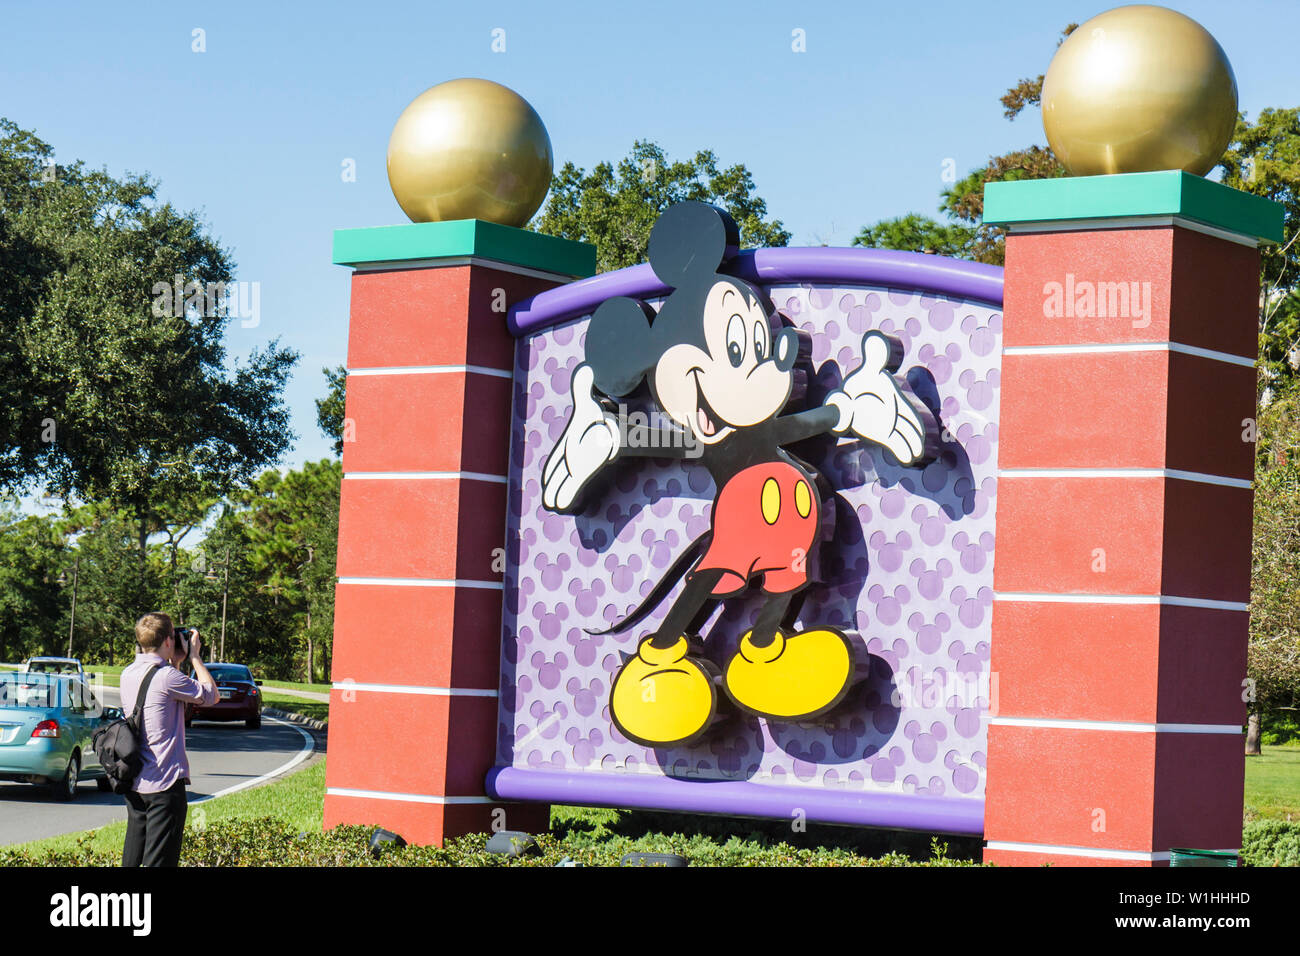 Orlando Florida,Buena Vista,Walt Disney World Resort,entrée,avant,panneau,Mickey Mouse,personnage de dessin animé,parc à thème,divertissement,hommes Banque D'Images